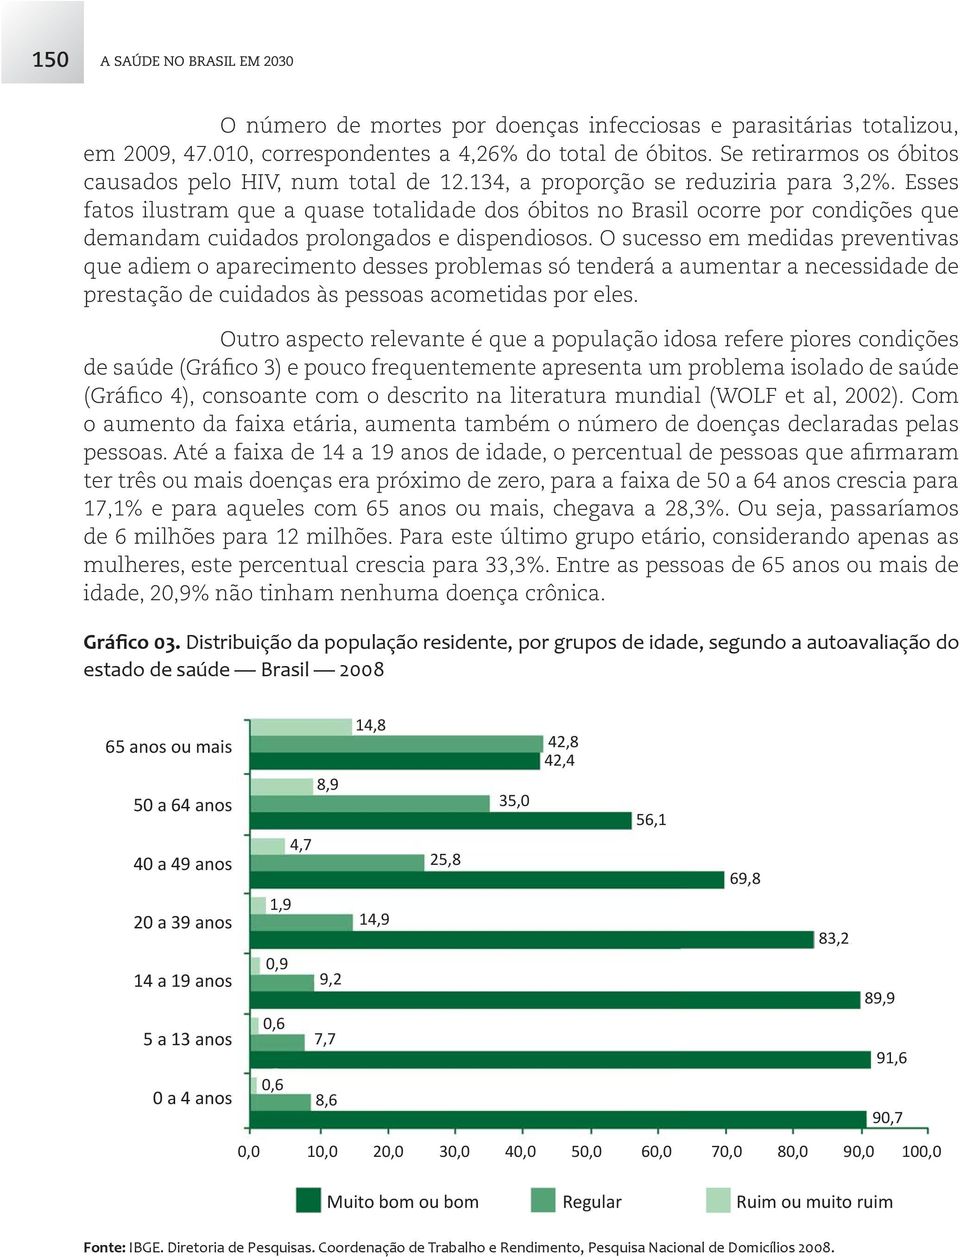 Esses fatos ilustram que a quase totalidade dos óbitos no Brasil ocorre por condições que demandam cuidados prolongados e dispendiosos.